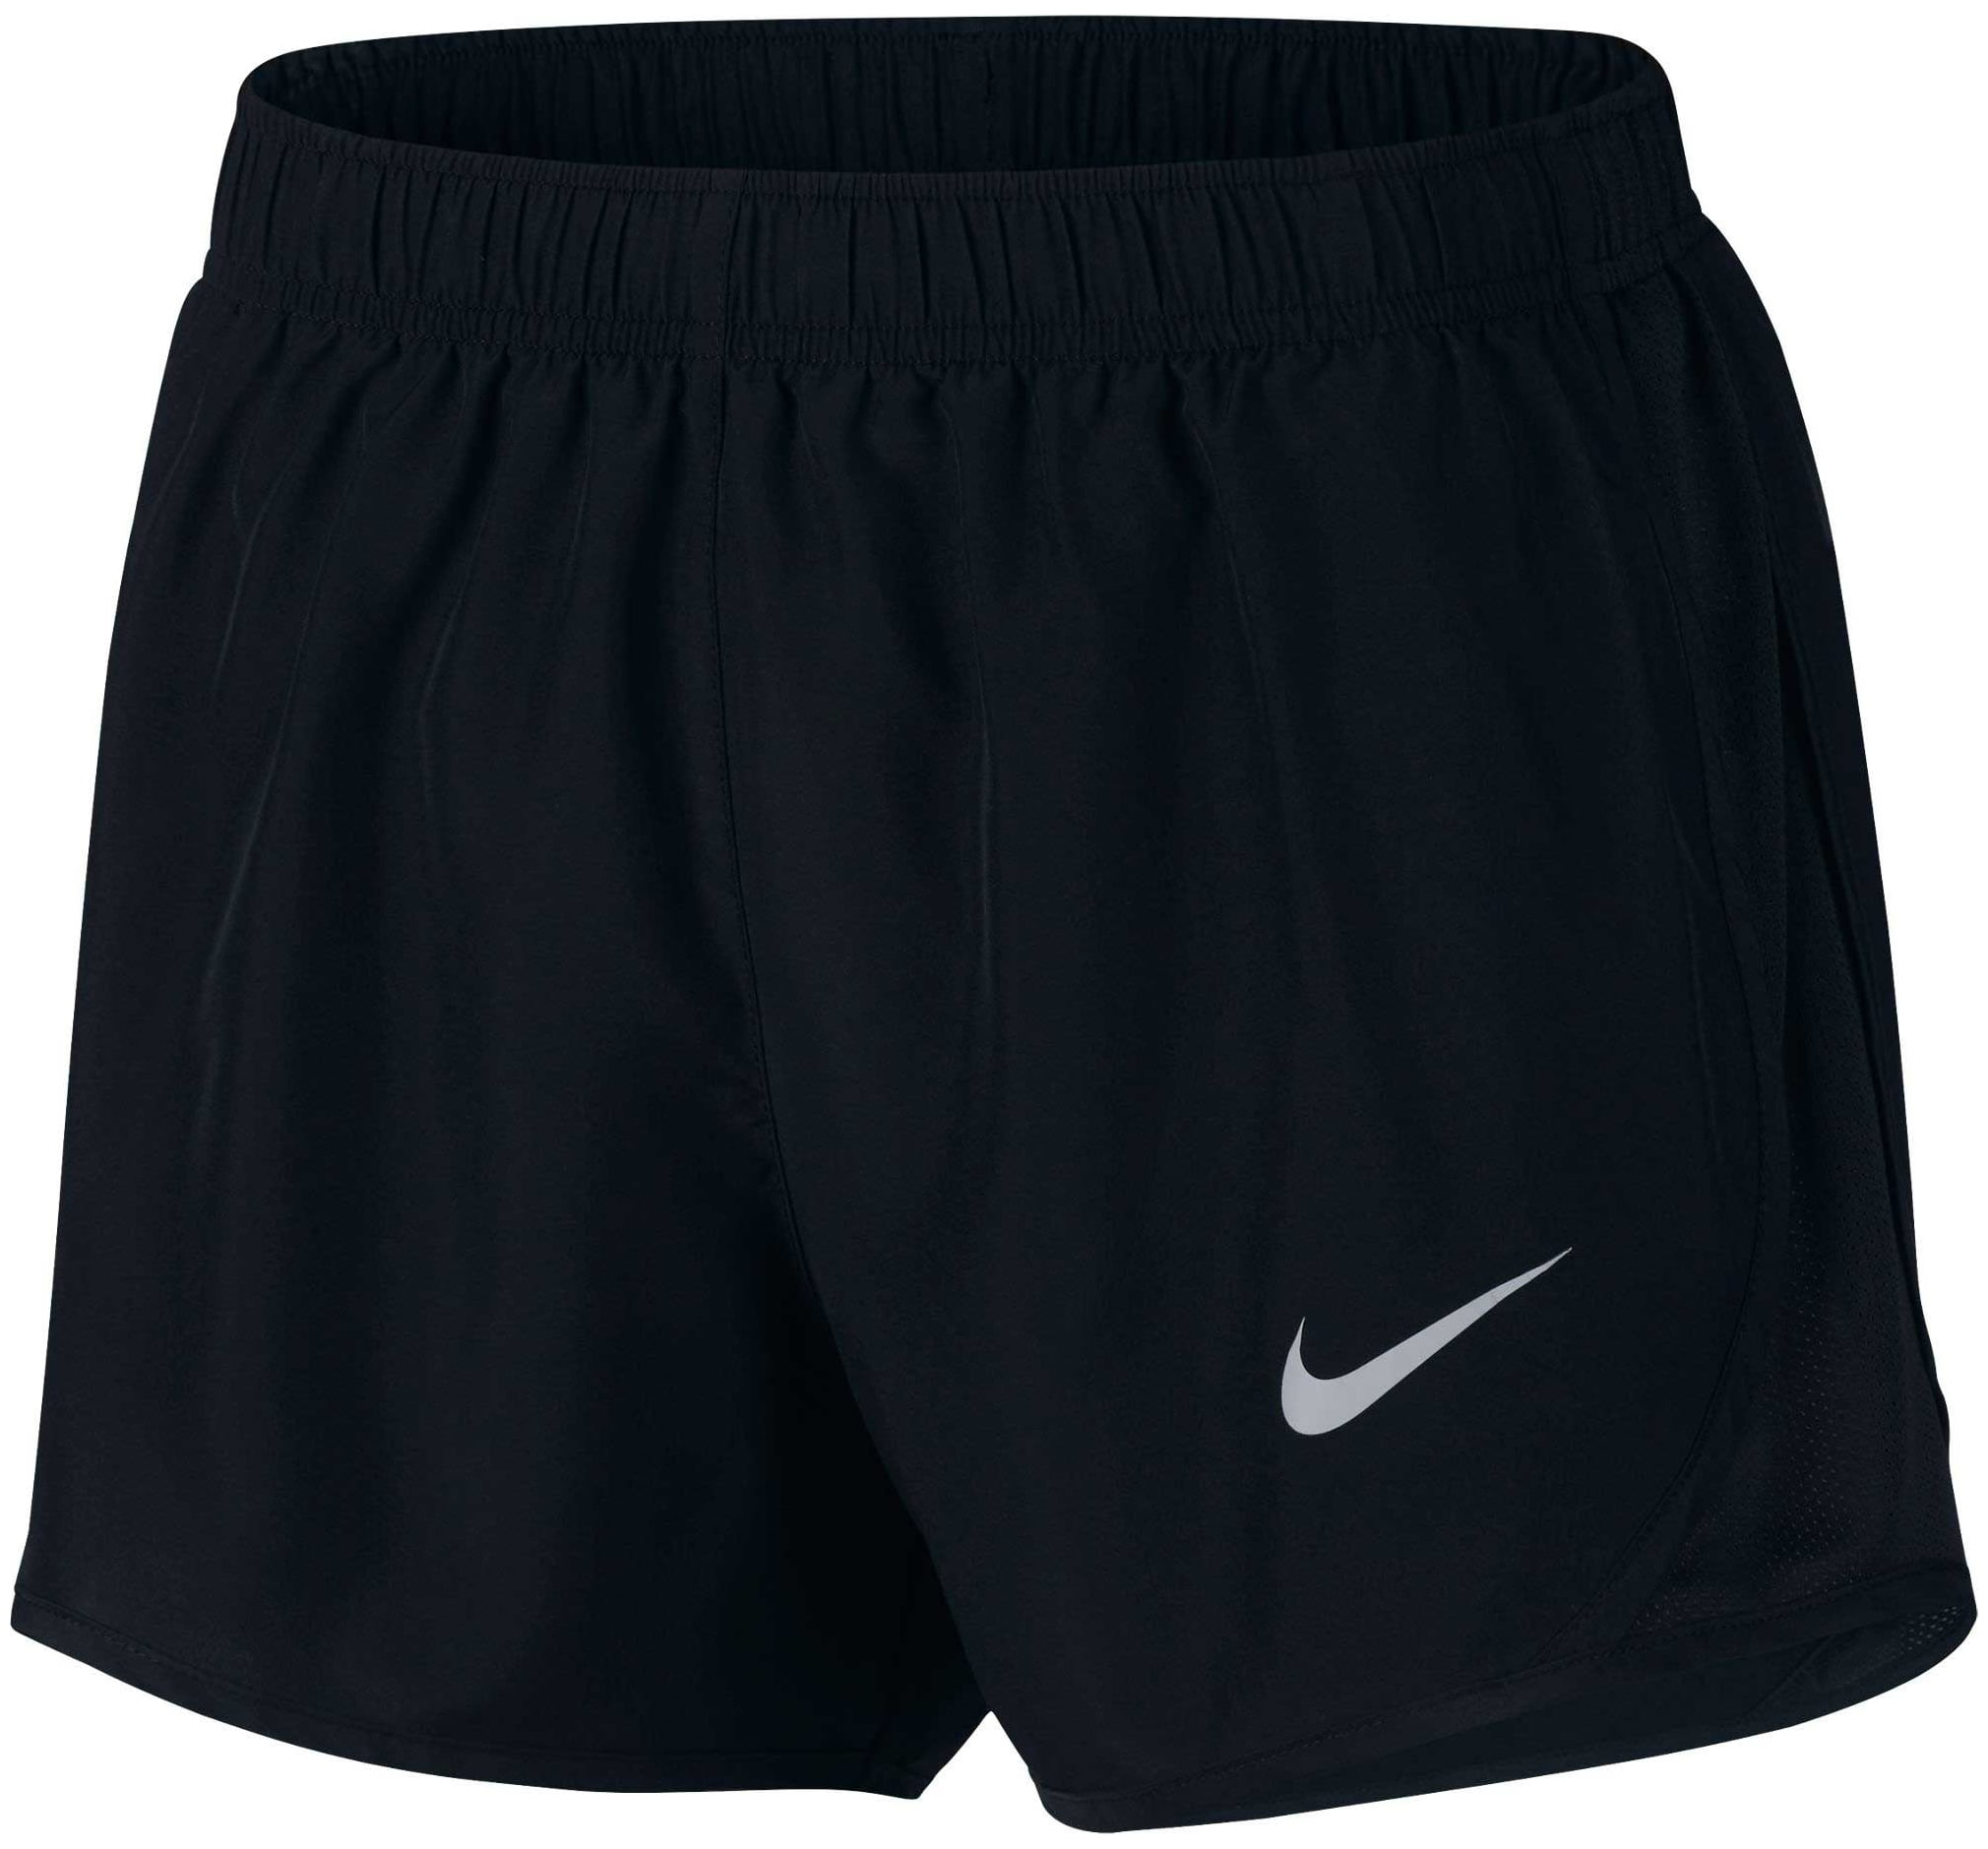 Nike - Nike Women's 3'' Dry Tempo Core Running Shorts - Black/Black/Blk ...